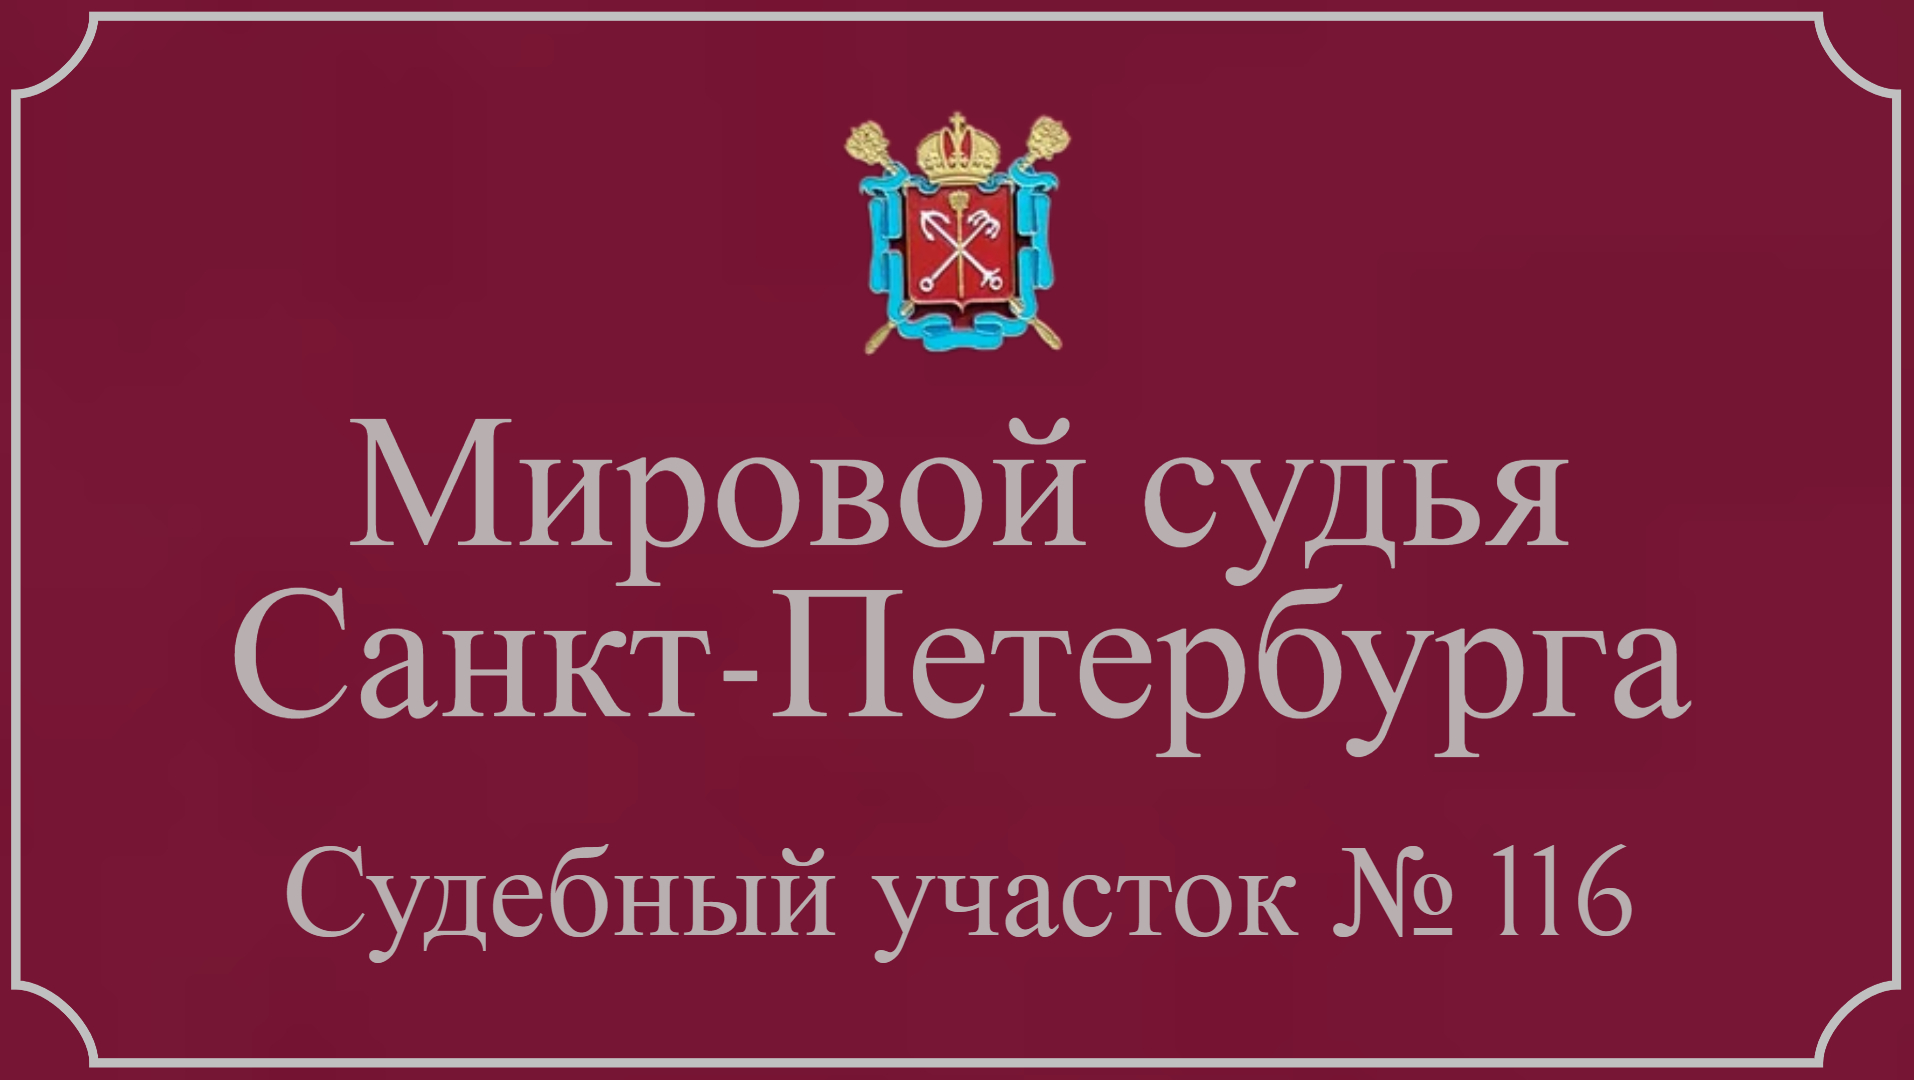 Информация по 116 судебному участку в Санкт-Петербурге.